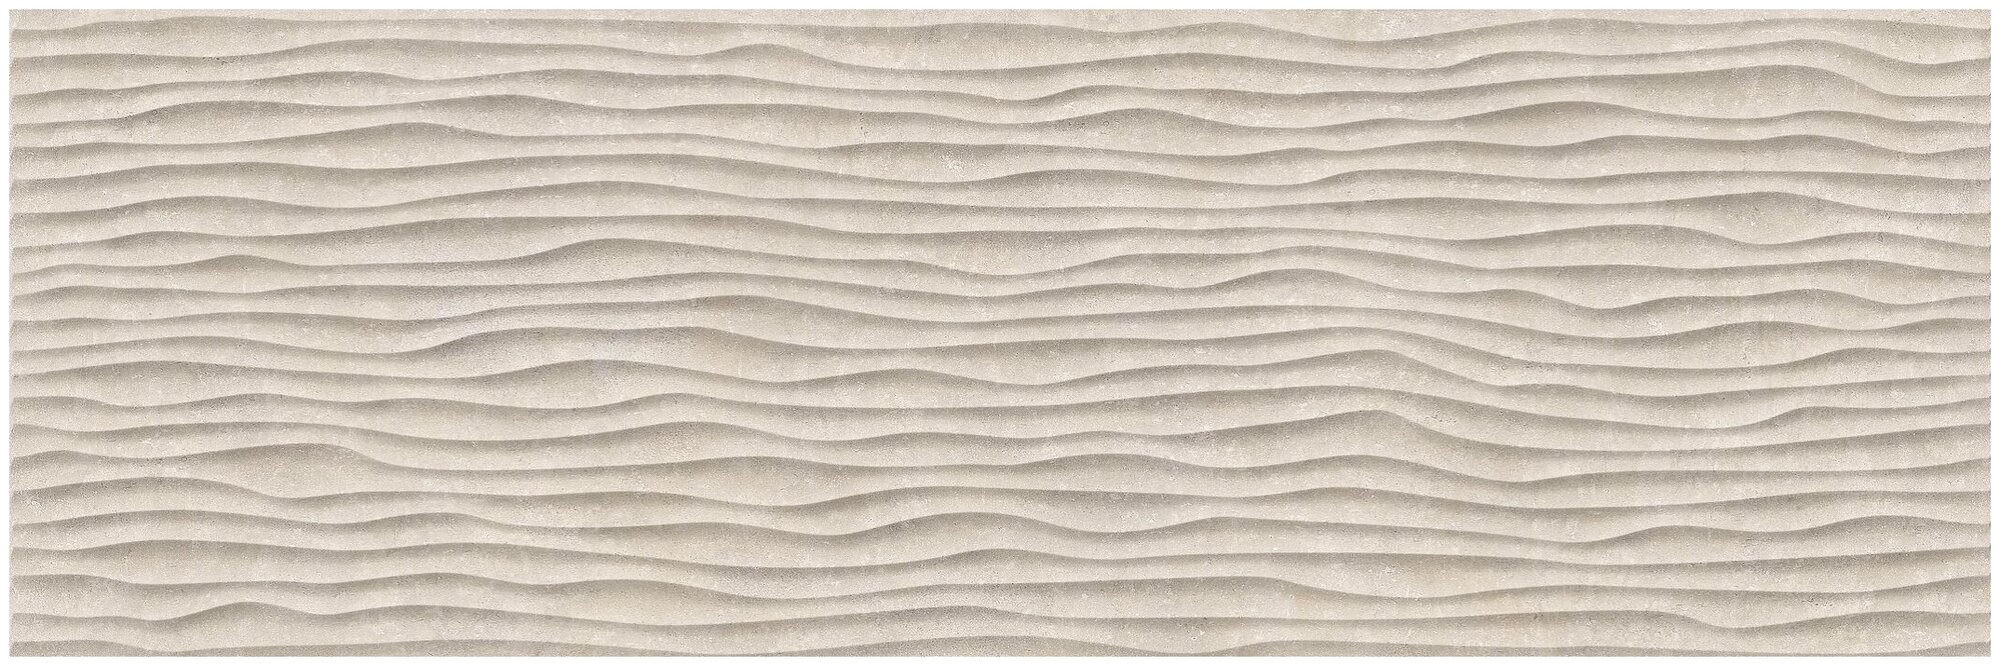 Керамическая плитка, настенная Emigres Cooper beige 30x90 см (1,32 м²)